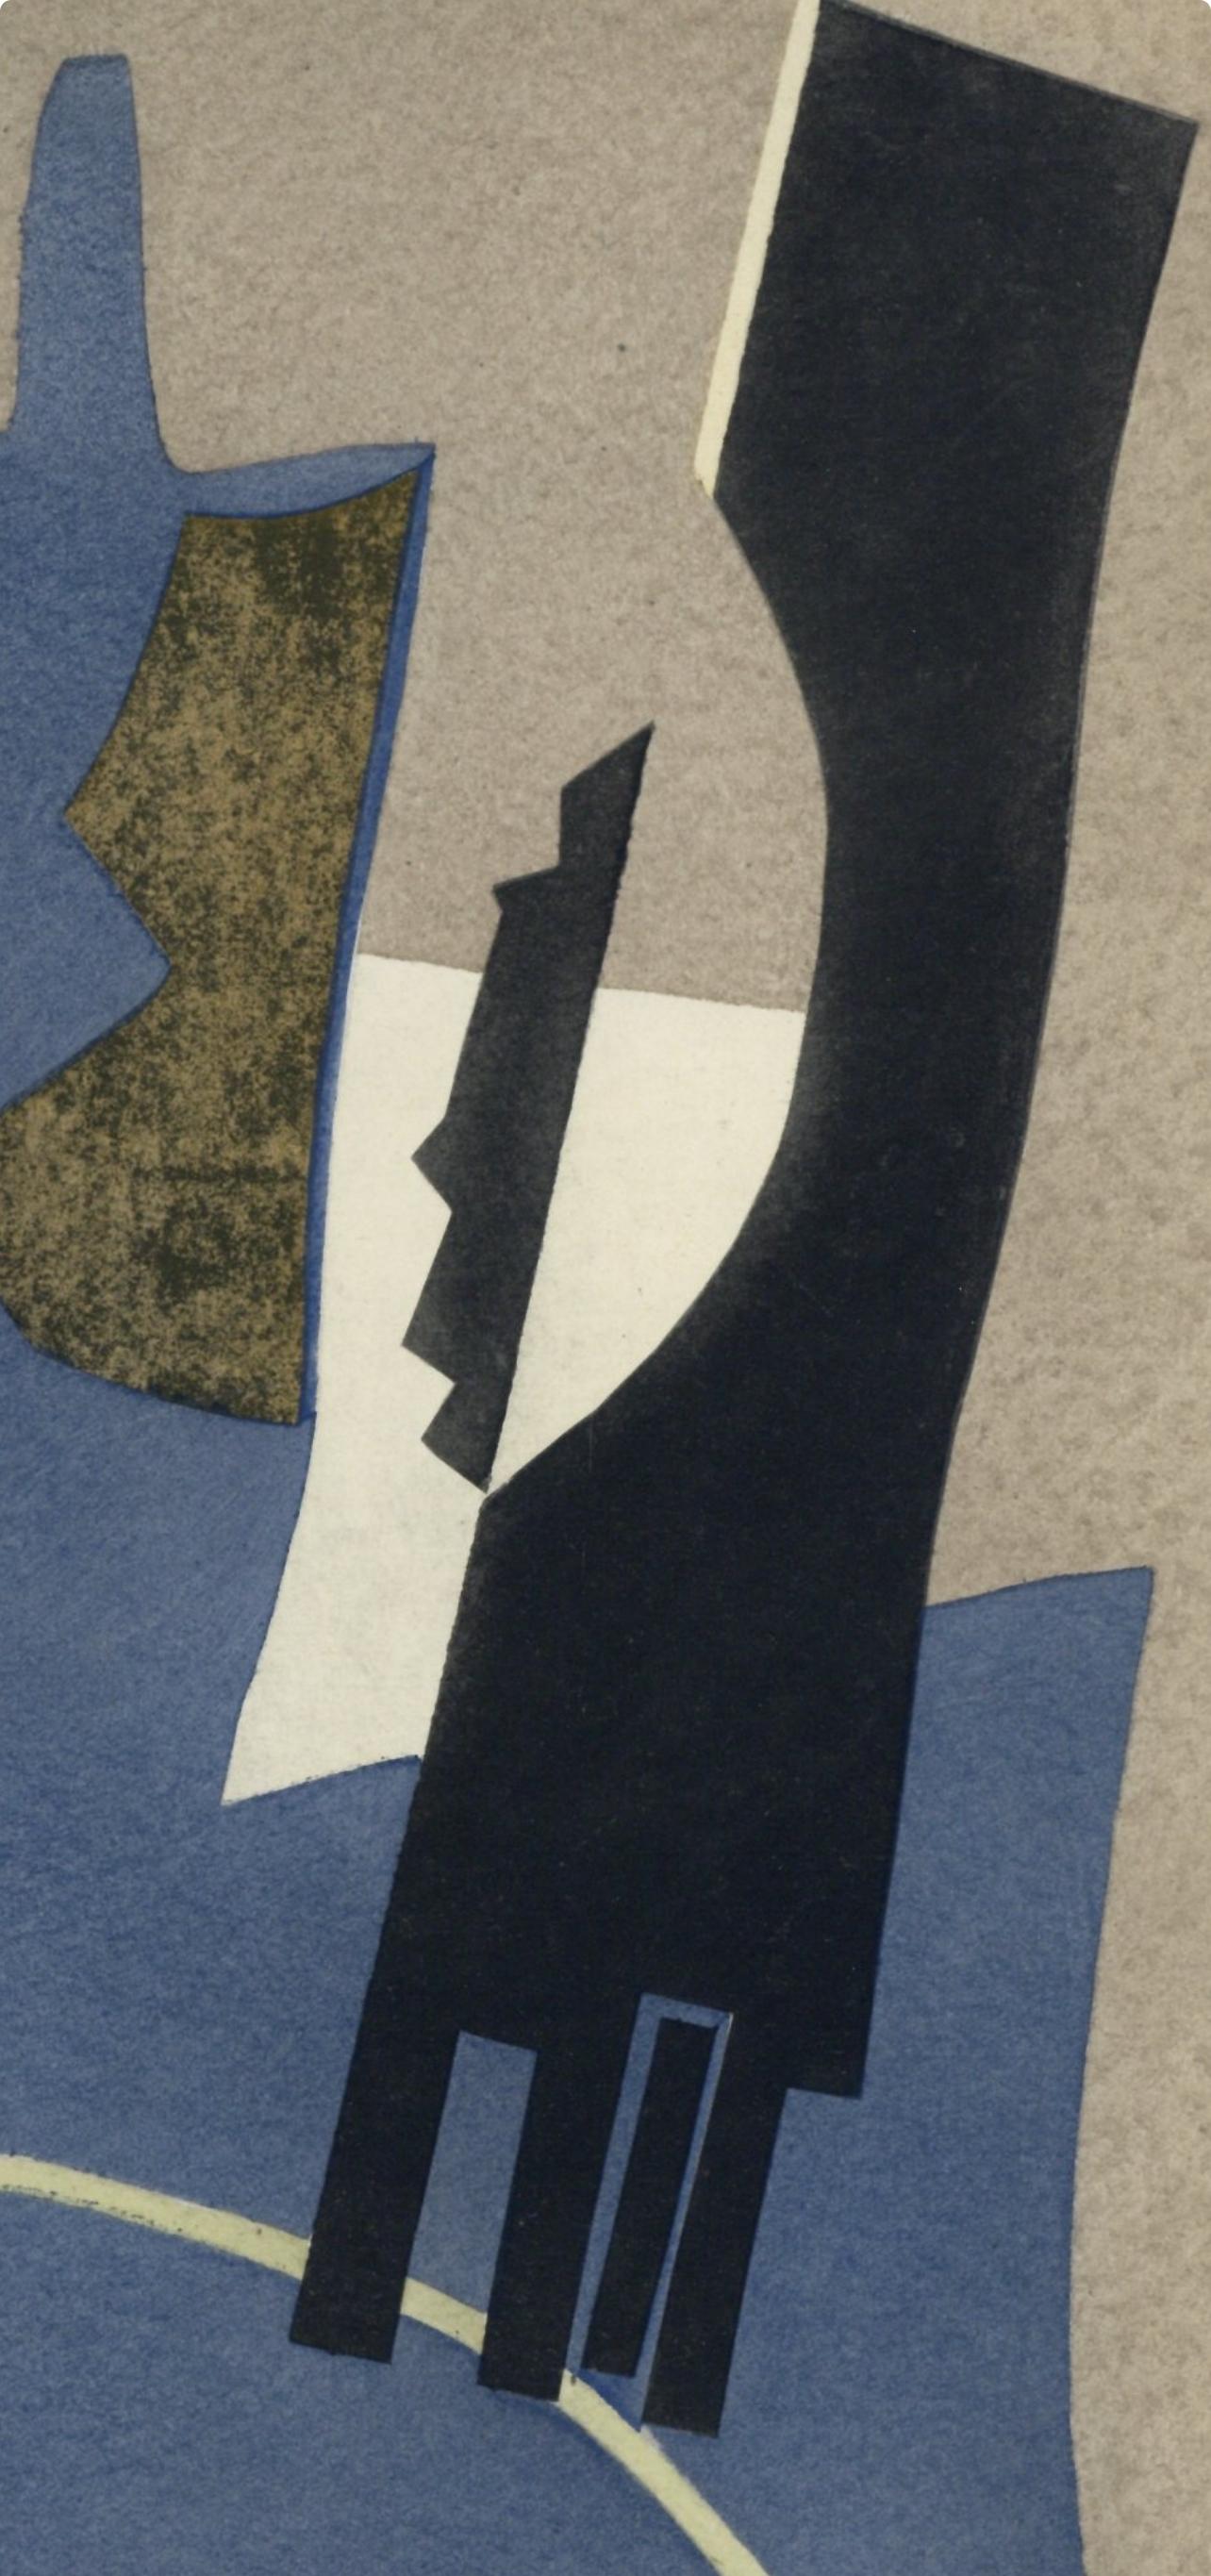 Magnelli, Papier collé, XXe Siècle (after) - Surrealist Print by Alberto Magnelli